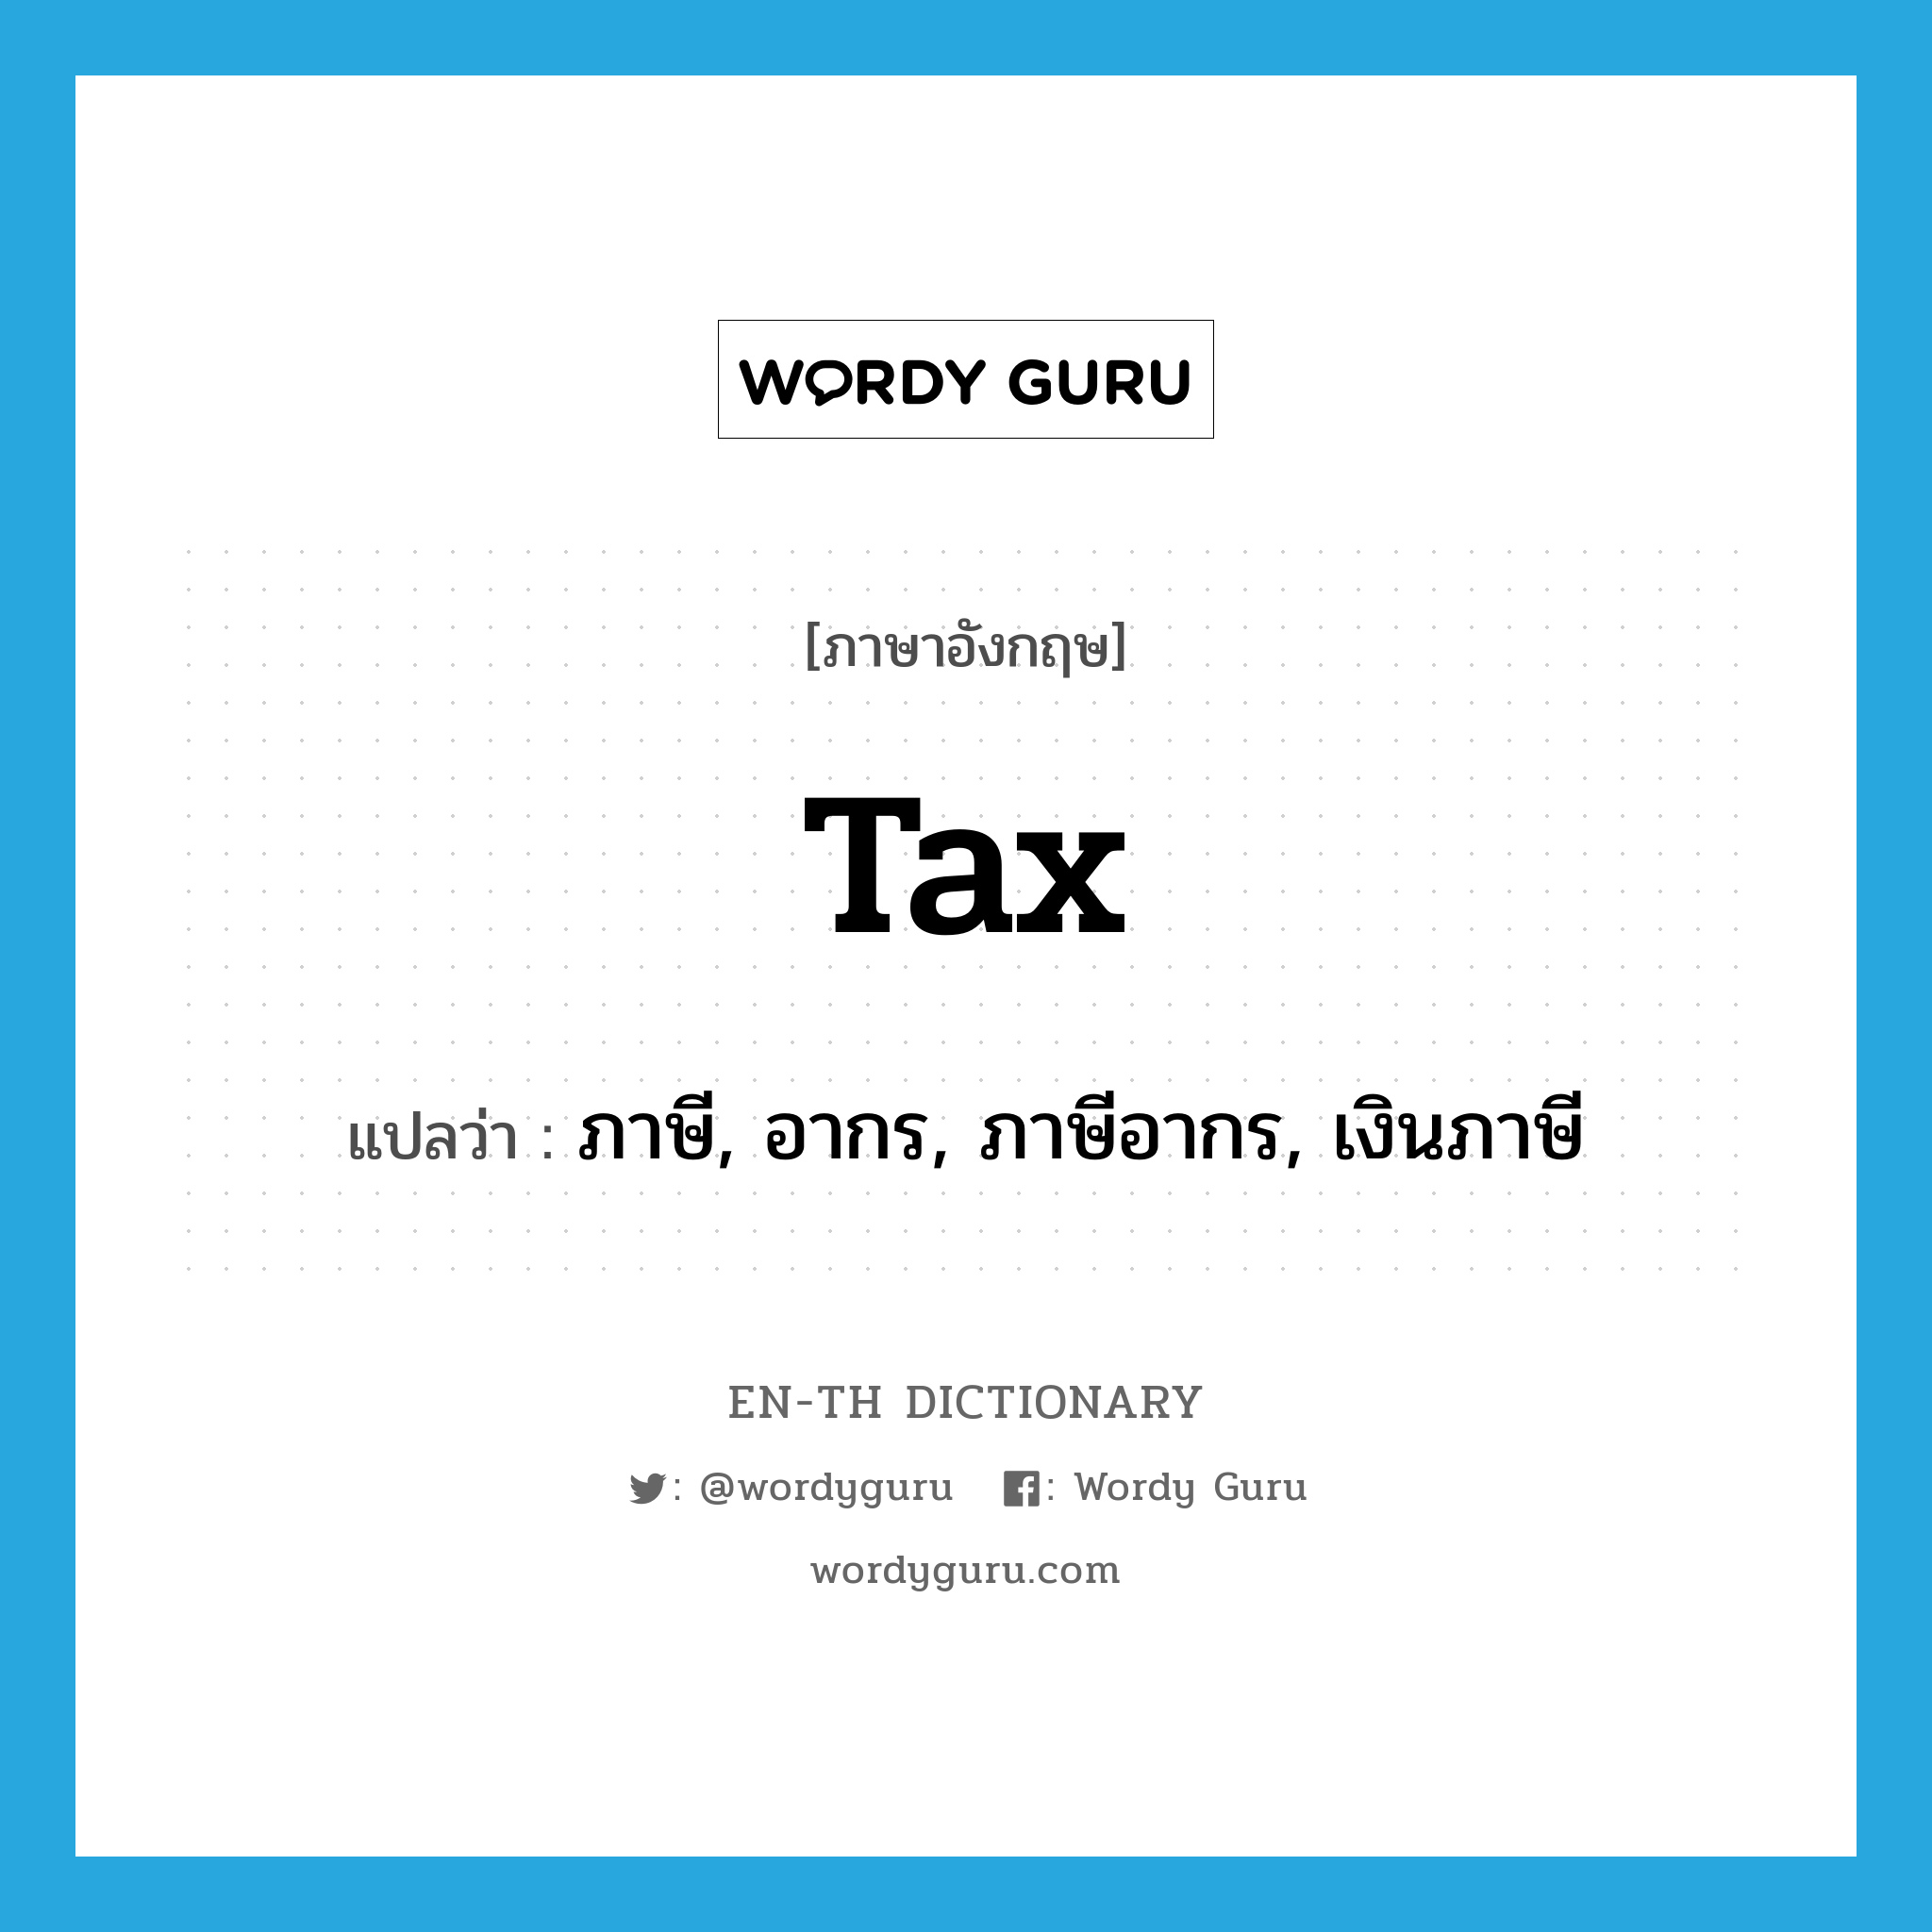 ภาษี, อากร, ภาษีอากร, เงินภาษี ภาษาอังกฤษ?, คำศัพท์ภาษาอังกฤษ ภาษี, อากร, ภาษีอากร, เงินภาษี แปลว่า tax ประเภท N หมวด N